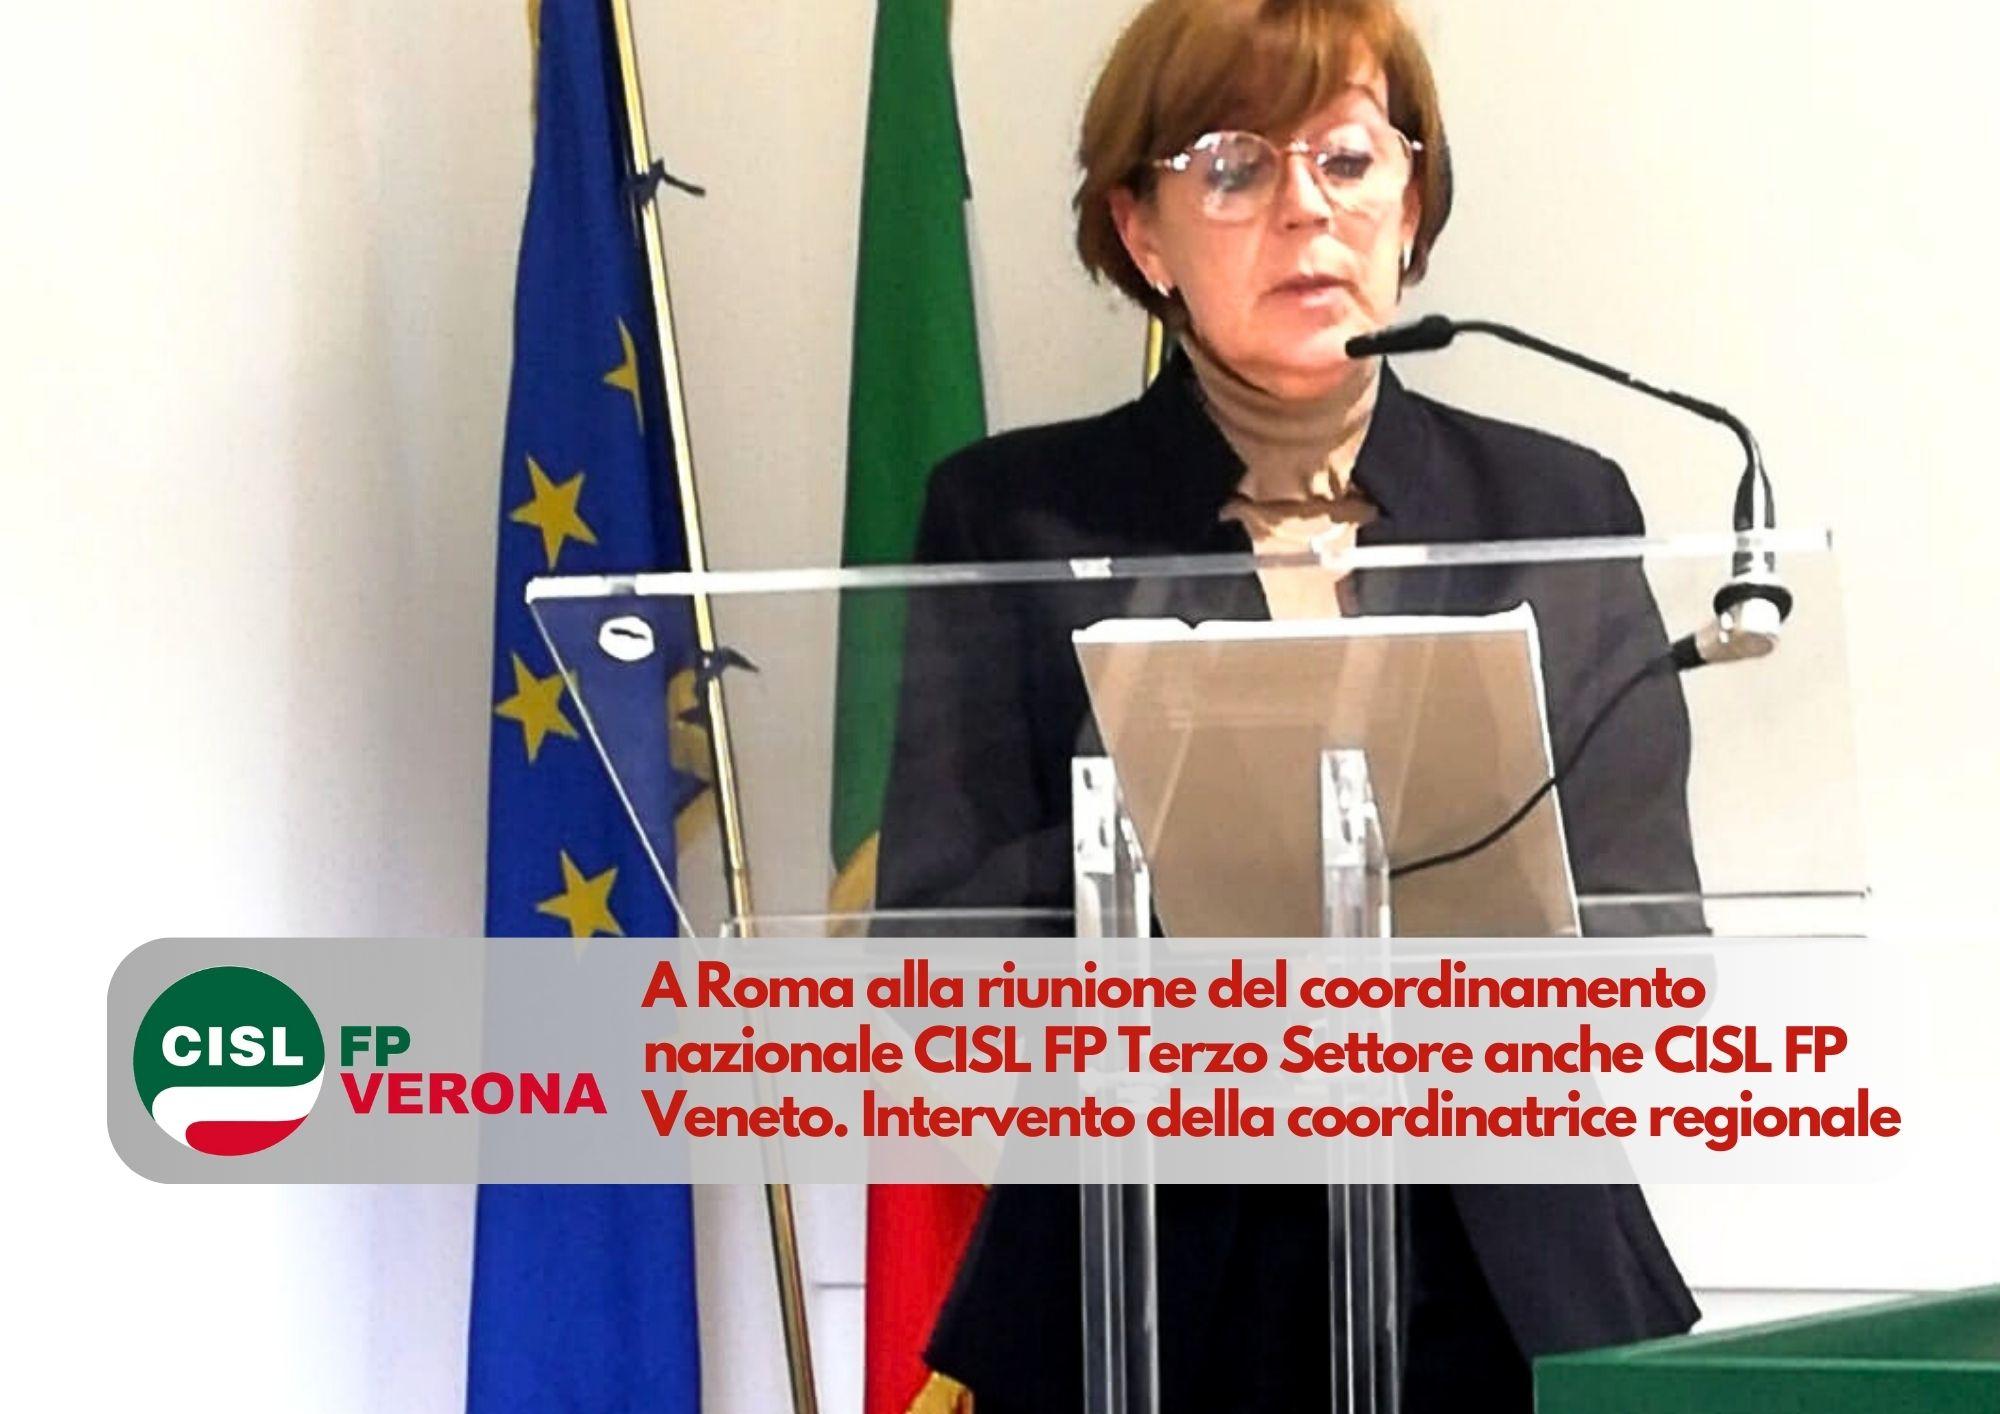 CISL FP Verona. A Roma alla riunione del coordinamento nazionale CISL FP Terzo Settore ci siamo anche noi